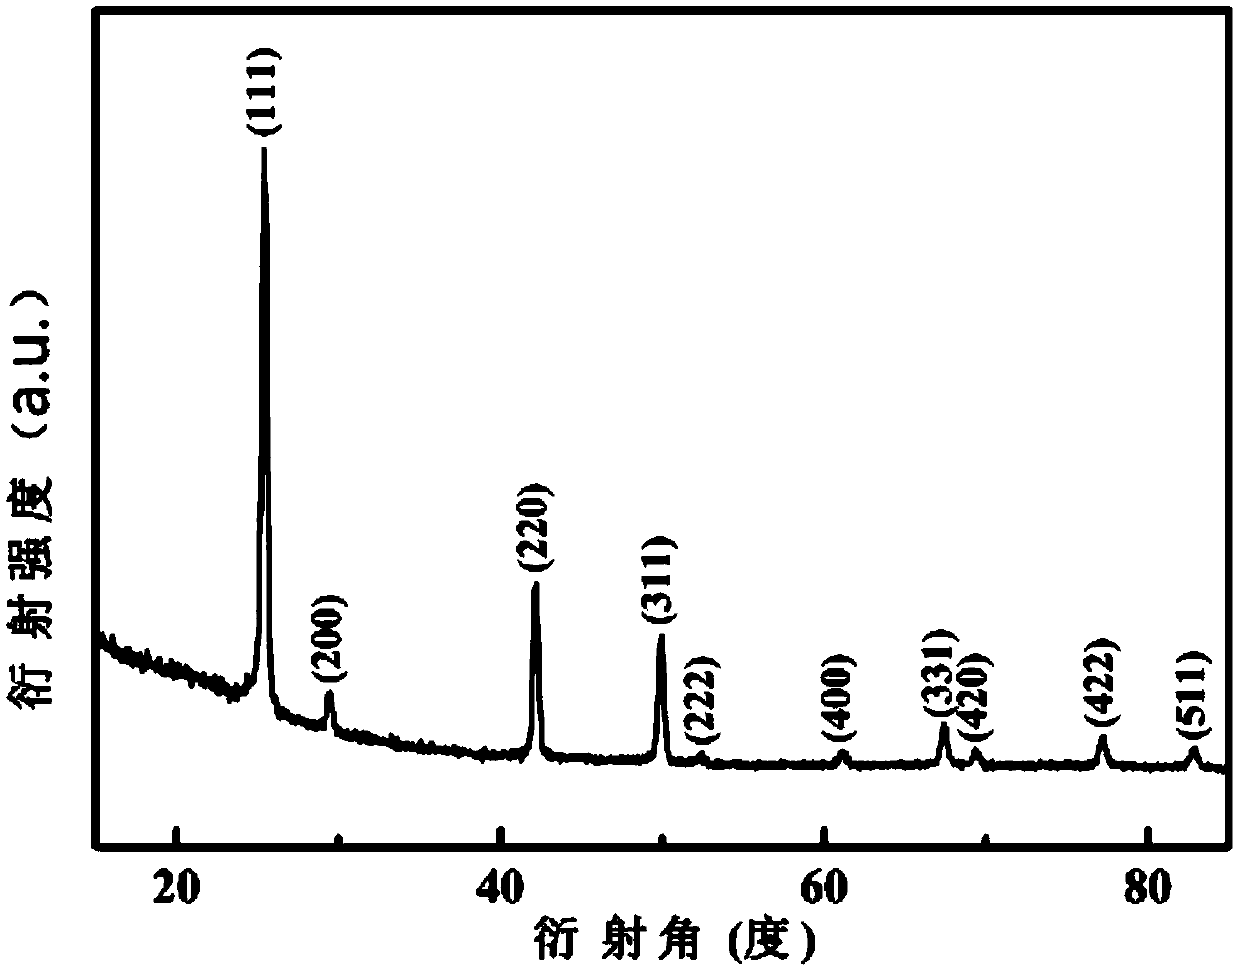 Method for preparing copper iodide P-type transparent semi-conductor thin film material at room temperature